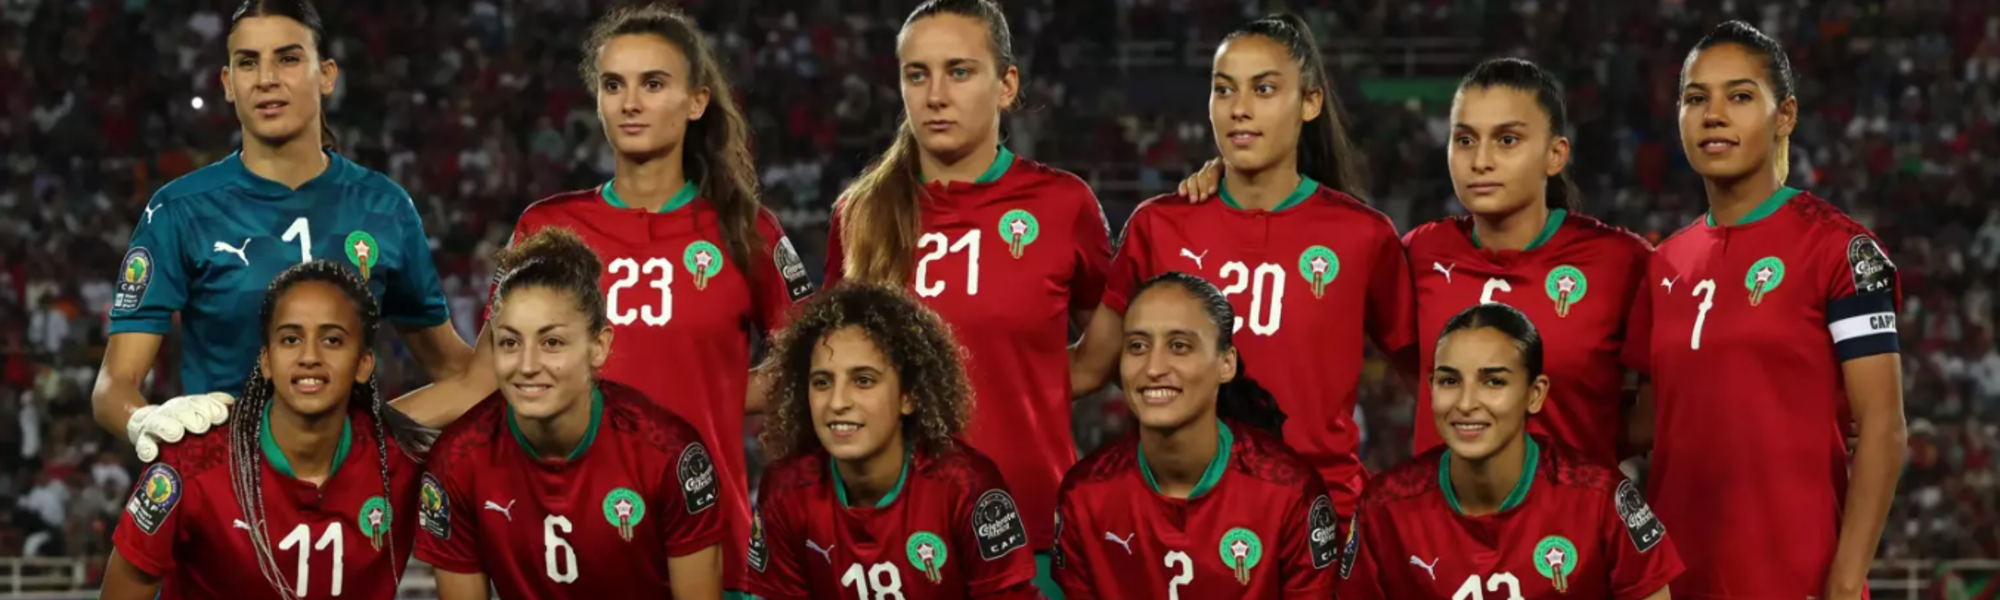 L'équipe du Maroc fait son entrée en lice dans cette Coupe du monde 2023, une première pour le football féminin dans un pays arabe